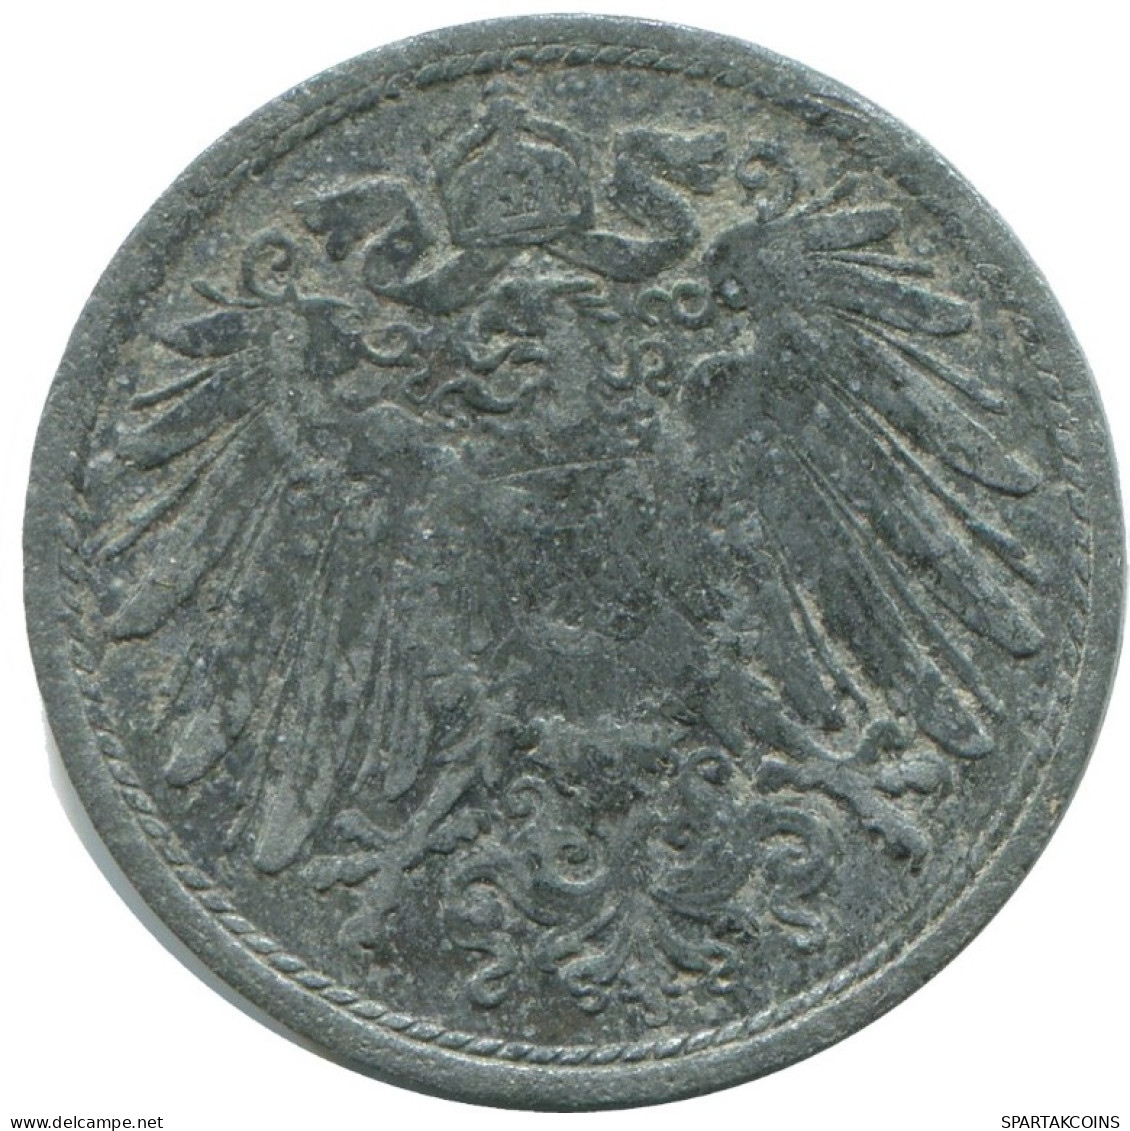 10 PFENNIG 1921 ALEMANIA Moneda GERMANY #AD516.9.E.A - 10 Renten- & 10 Reichspfennig